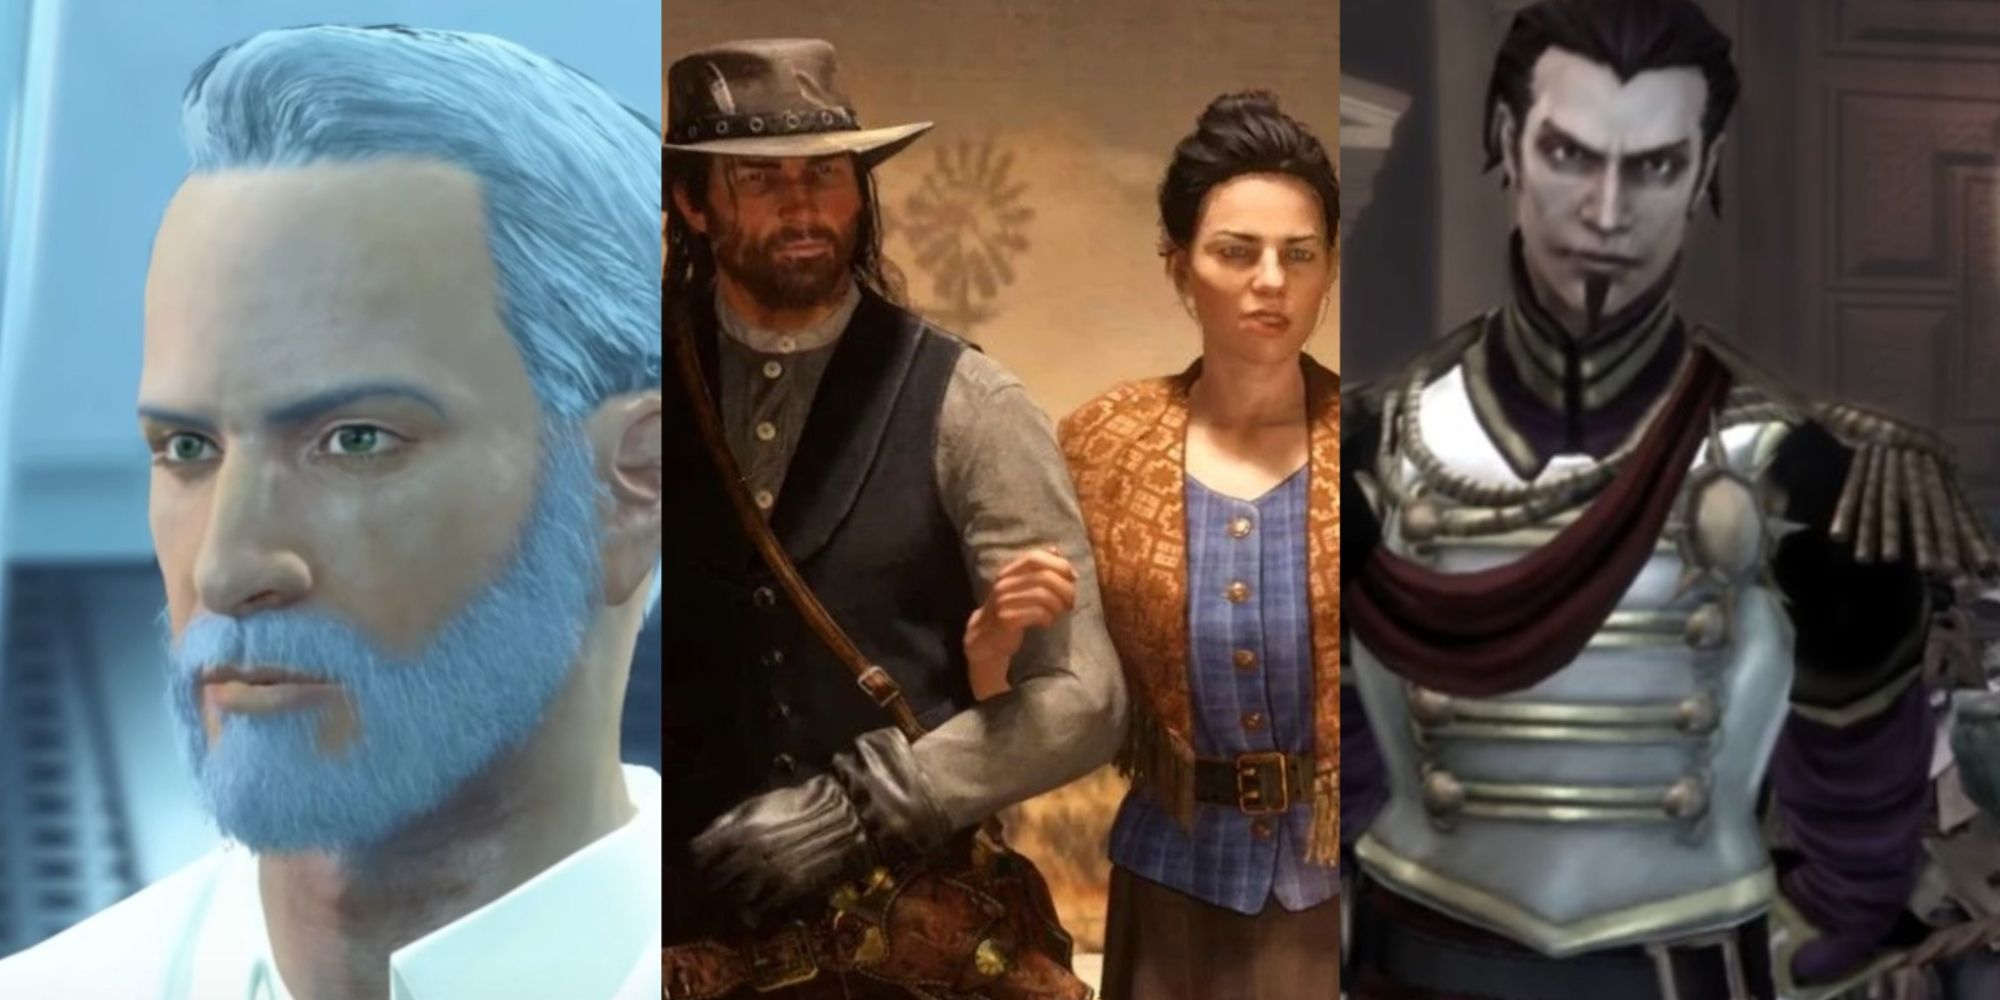 Spielegeschichten, die sich im Laufe der vorgestellten geteilten Bilder Fallout 4, Red Dead Redemption 2 und Fable 3 verändern